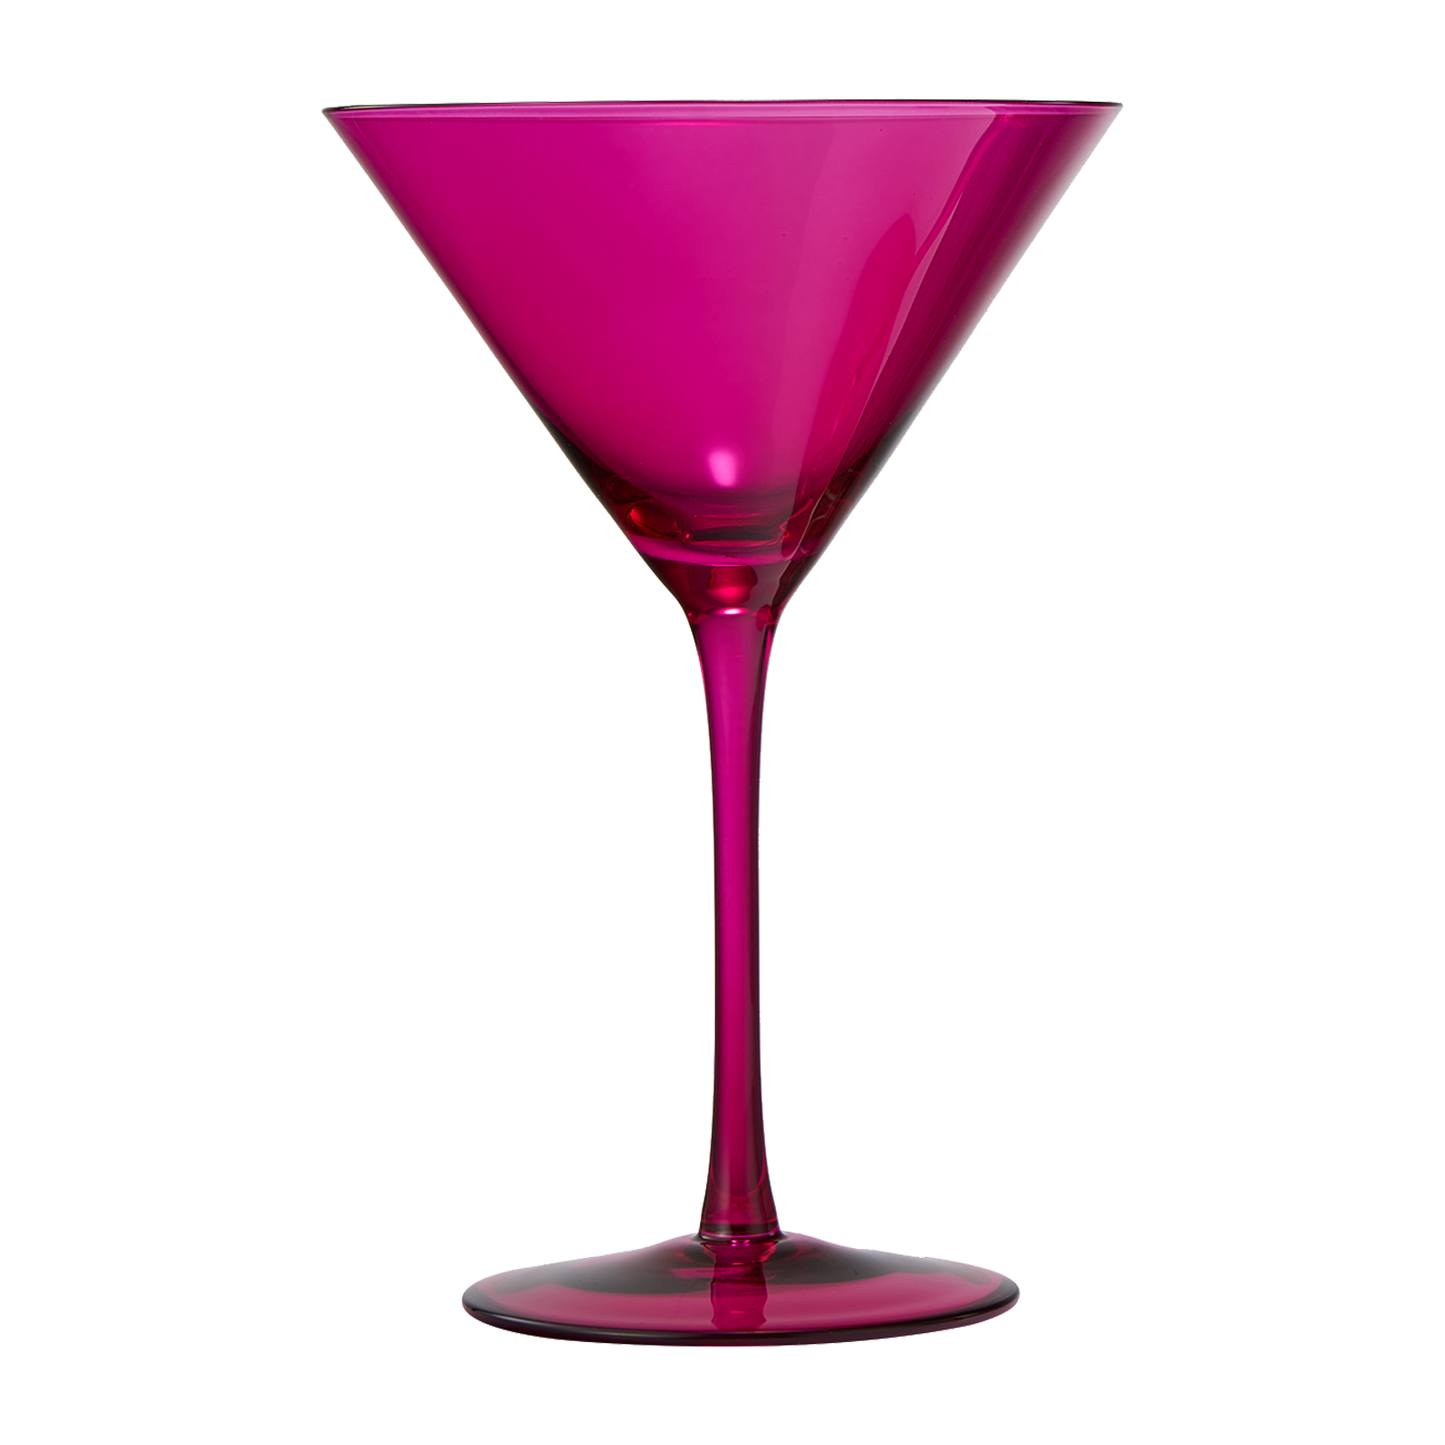 Chica Martini Glassware, Set of 2